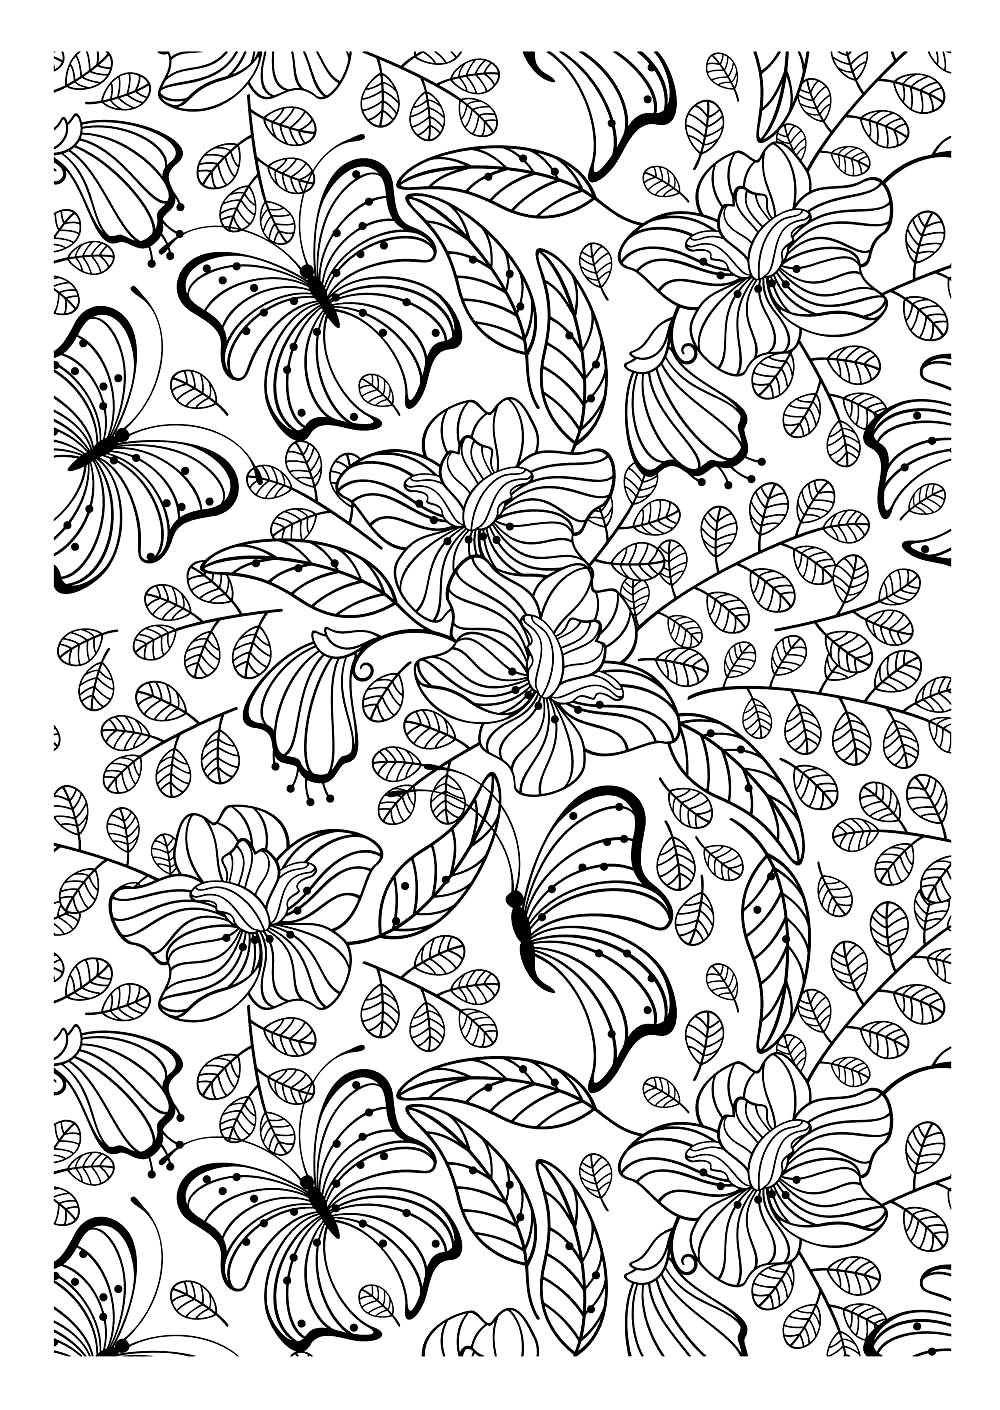 Outra imagem para imprimir e colorir cheia de folhas bonitas, flores e borboletas, que é certamente uma página de coloração adulta interessante para se conseguir